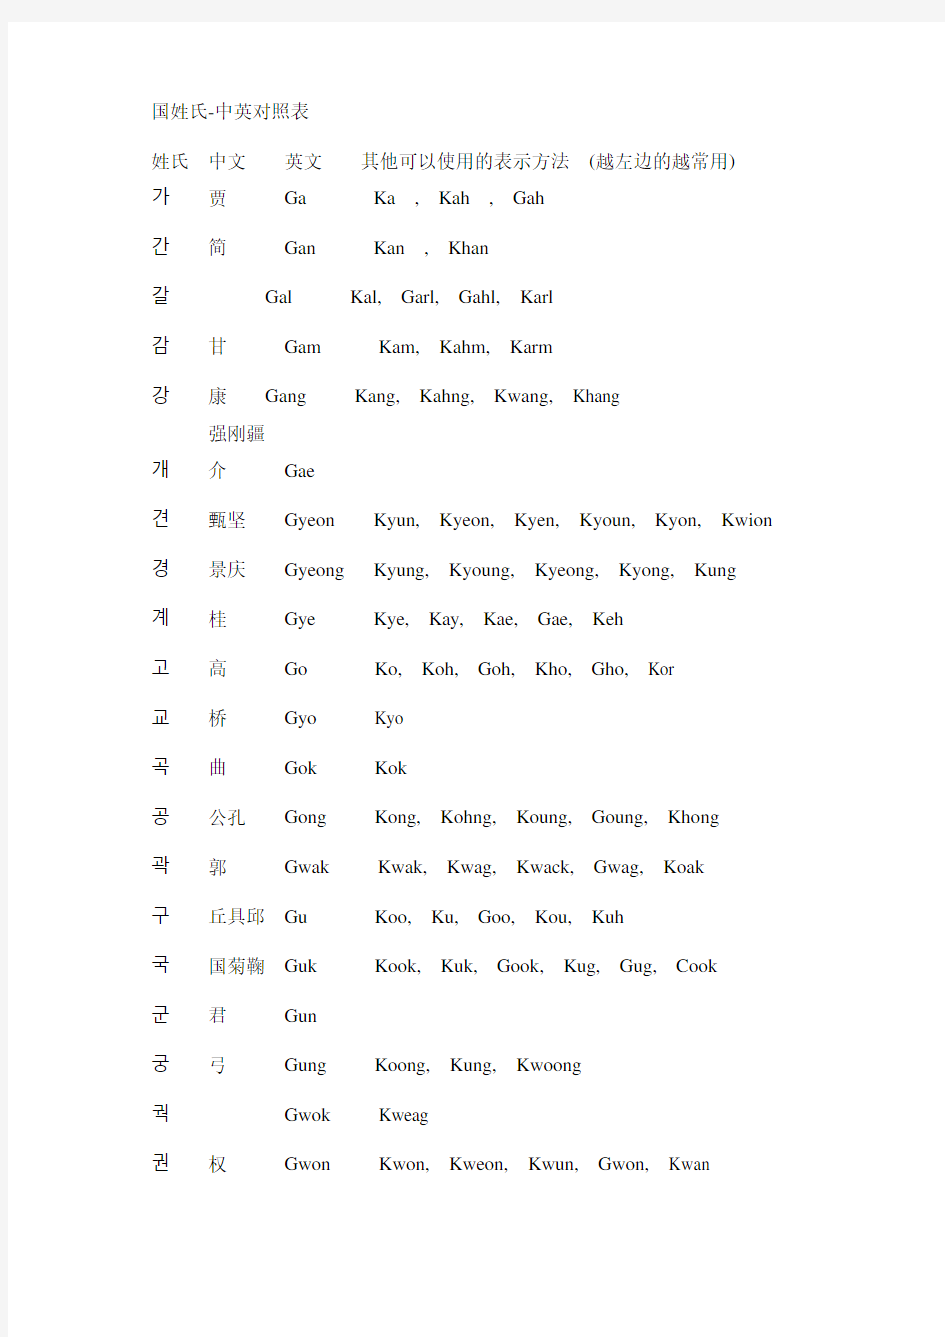 韩-中-英姓氏对照表